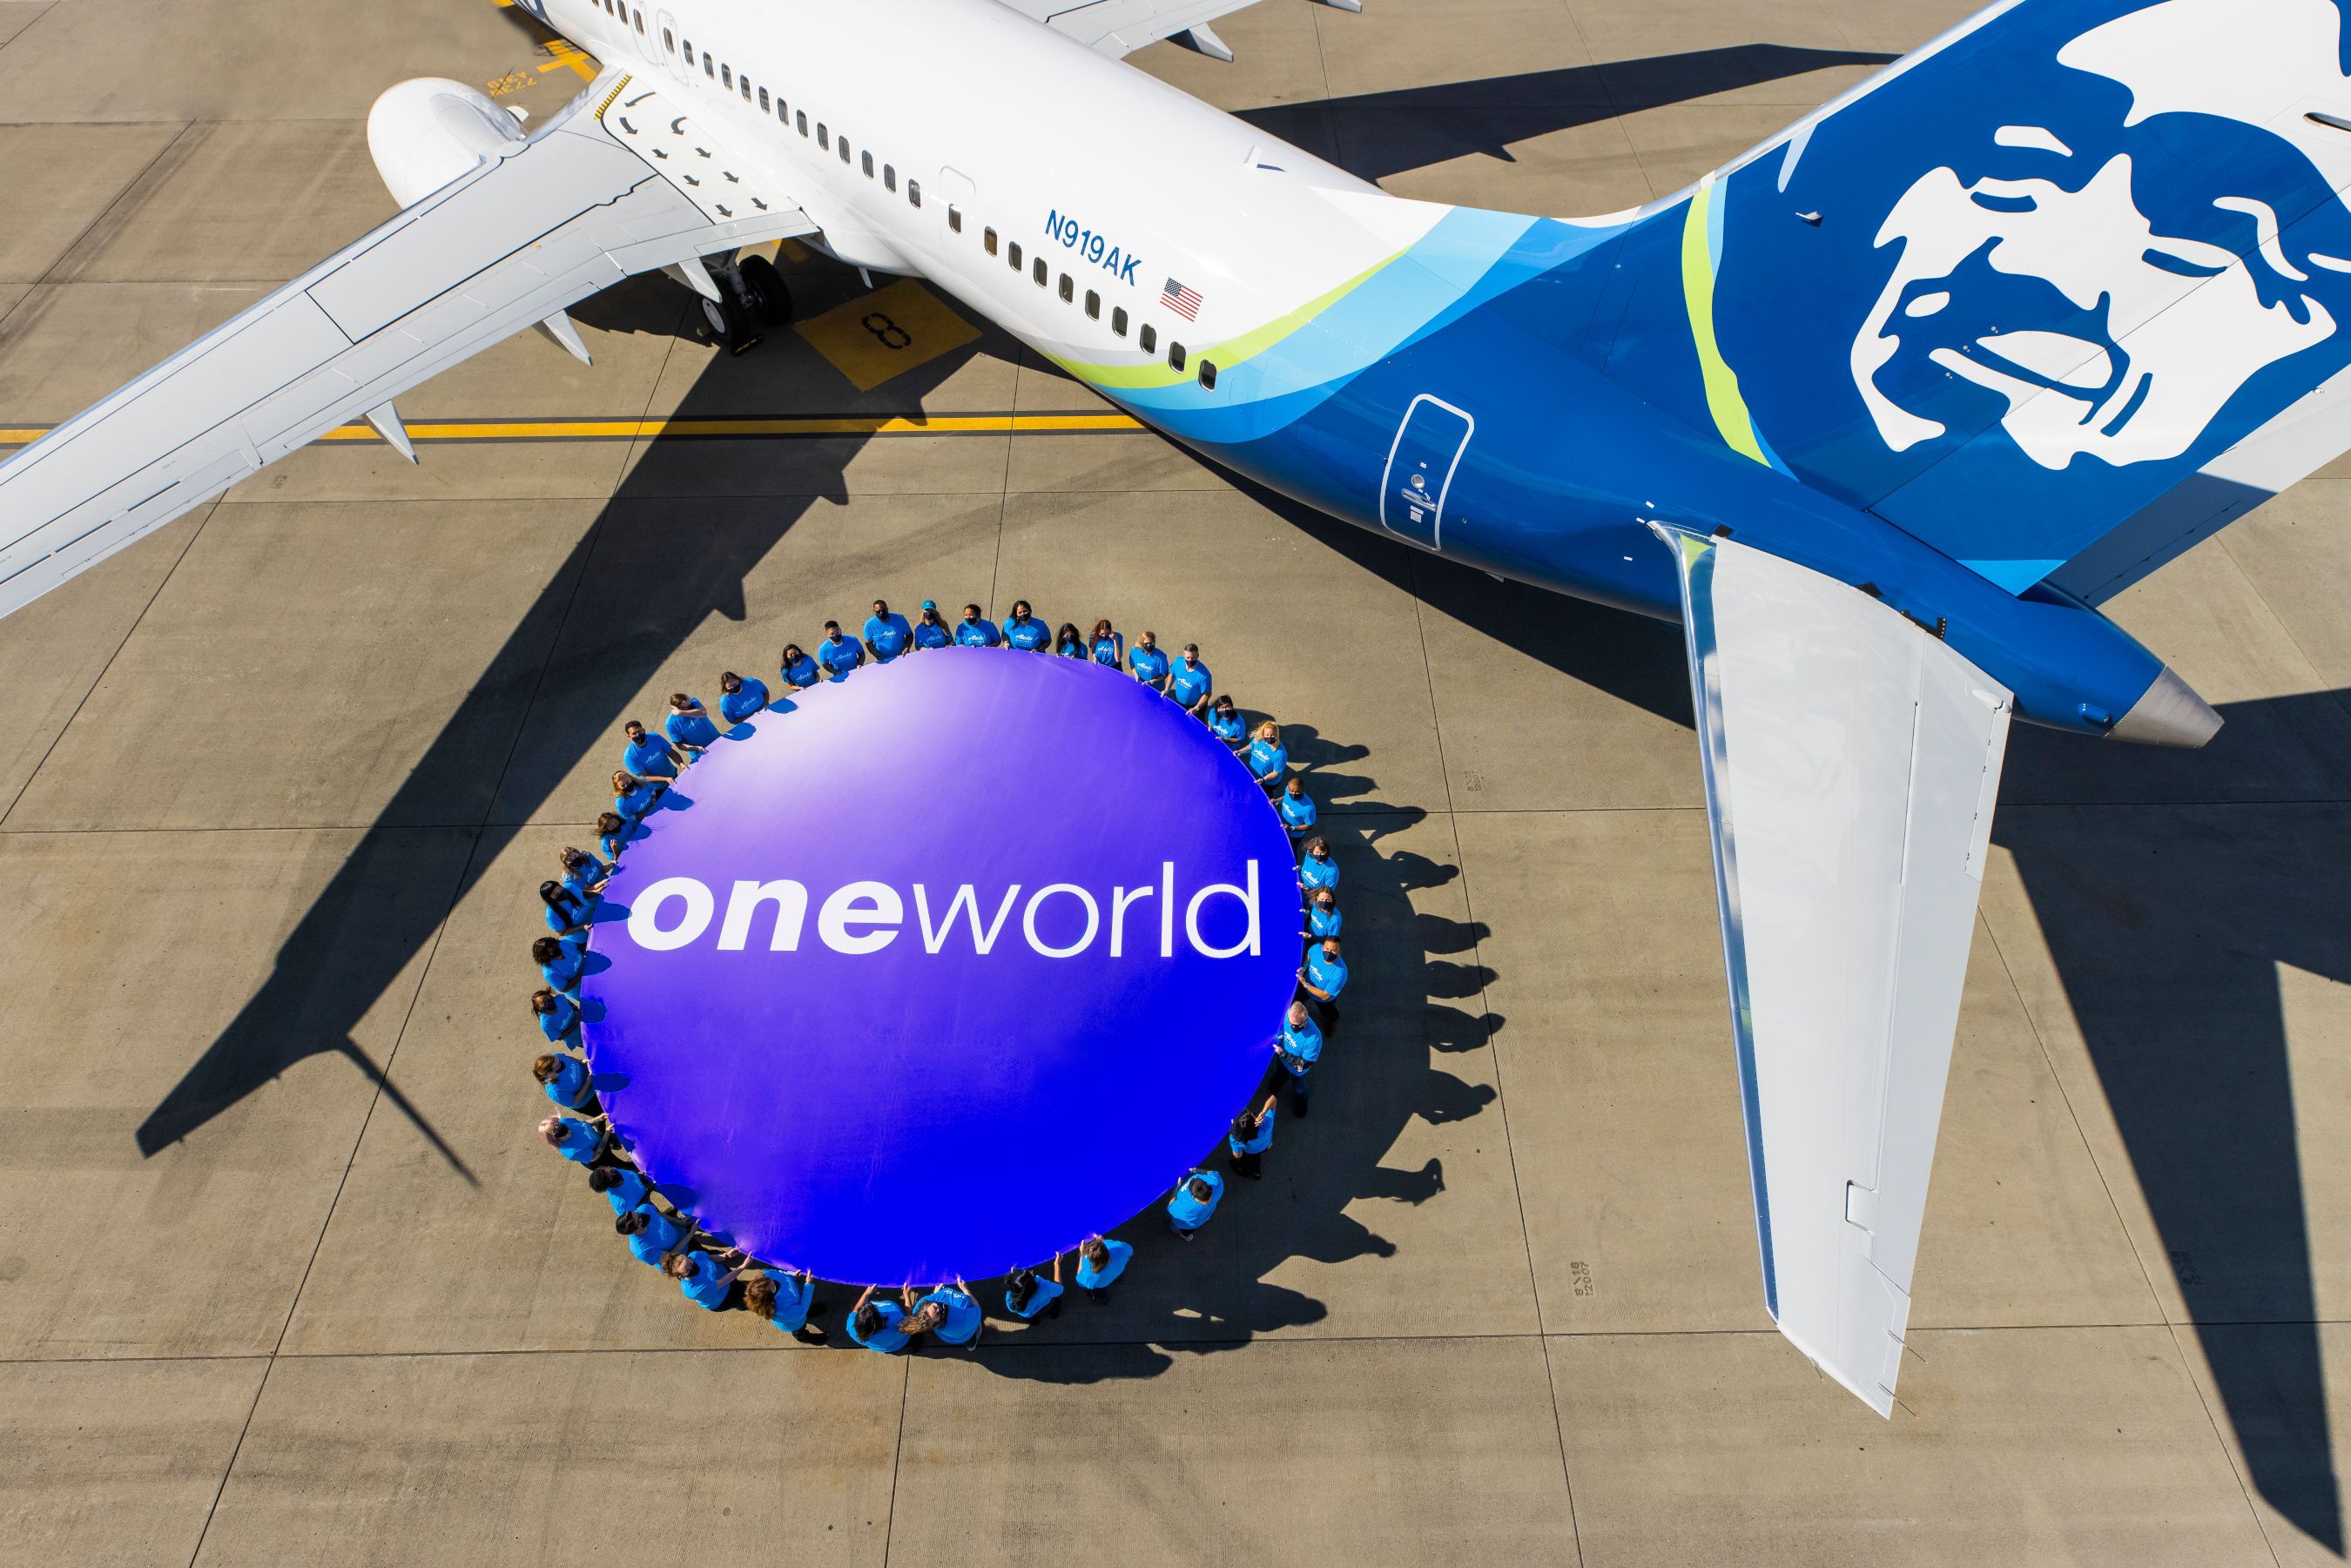 An Alaska Airlines aircraft next to a oneworld banner.